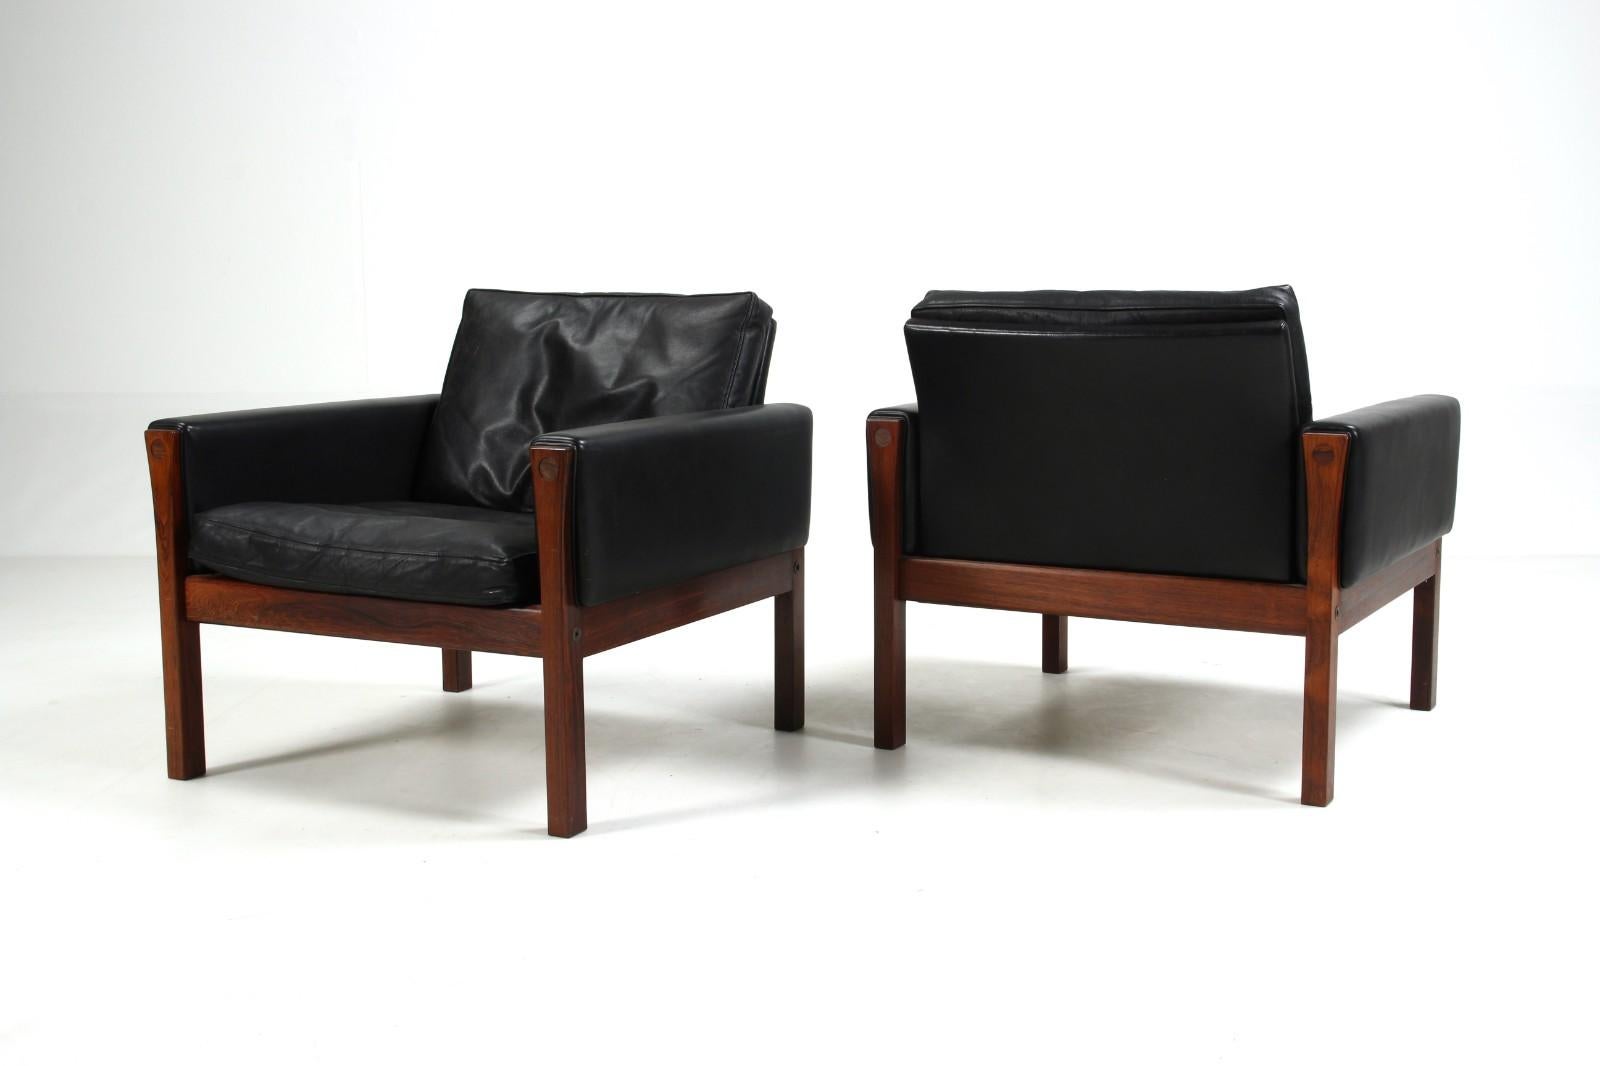 Un design élégant et sobre de Hans Wegner produit par le fabricant danois A.P. Volé. Les lignes épurées de ces fauteuils sont mises en valeur par la belle structure en bois de rose et font de ce modèle un fauteuil au charme vintage, mais aussi très